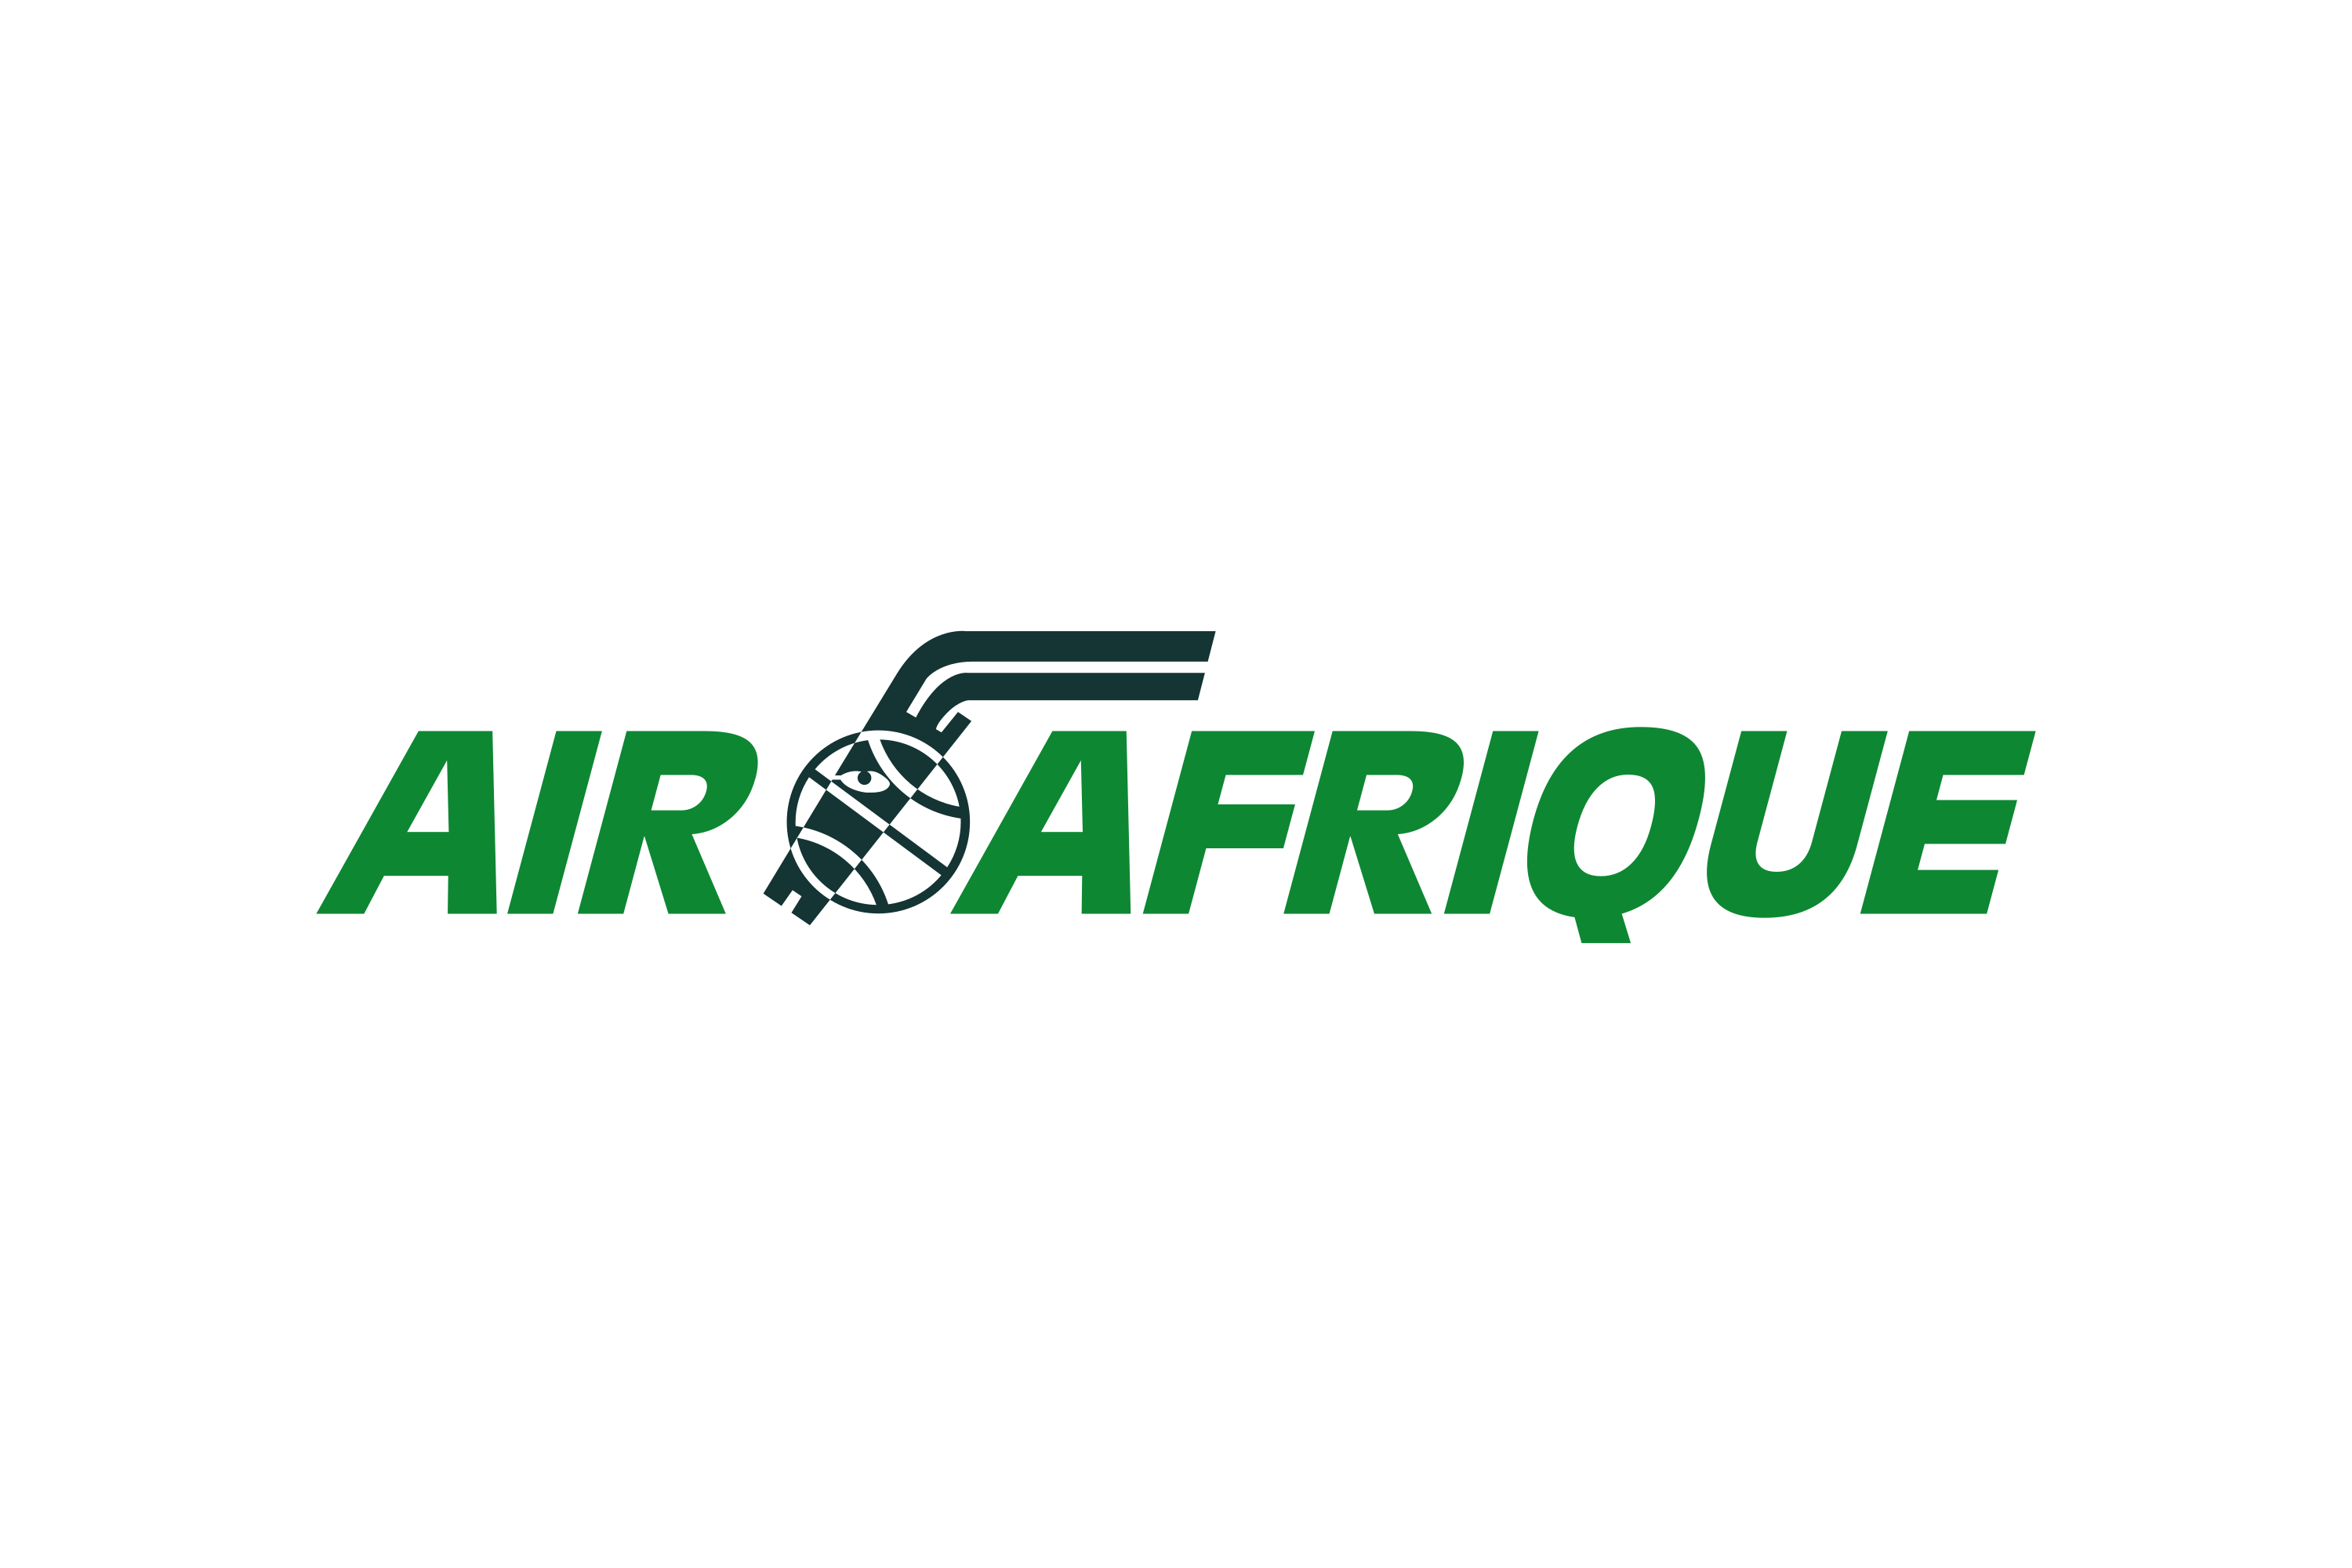 Download Air Afrique Logo In Svg Vector Or Png File Format Logo Wine